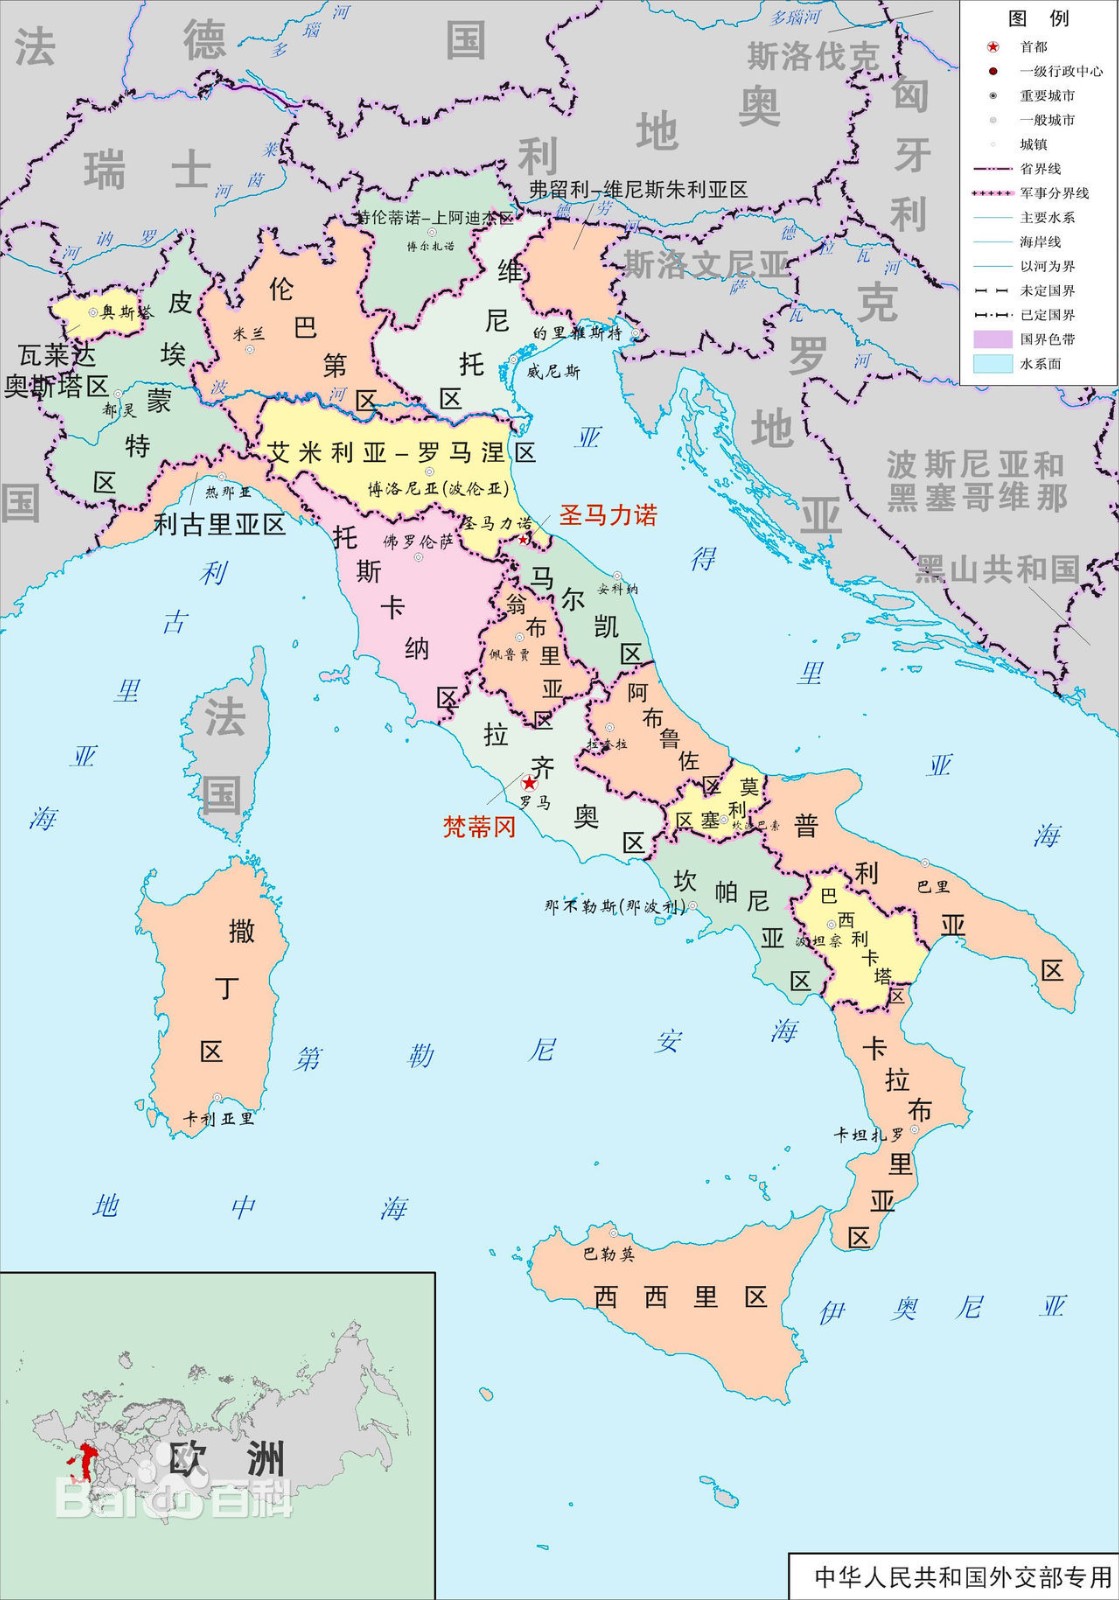 罗马和意大利是什么关系啊？